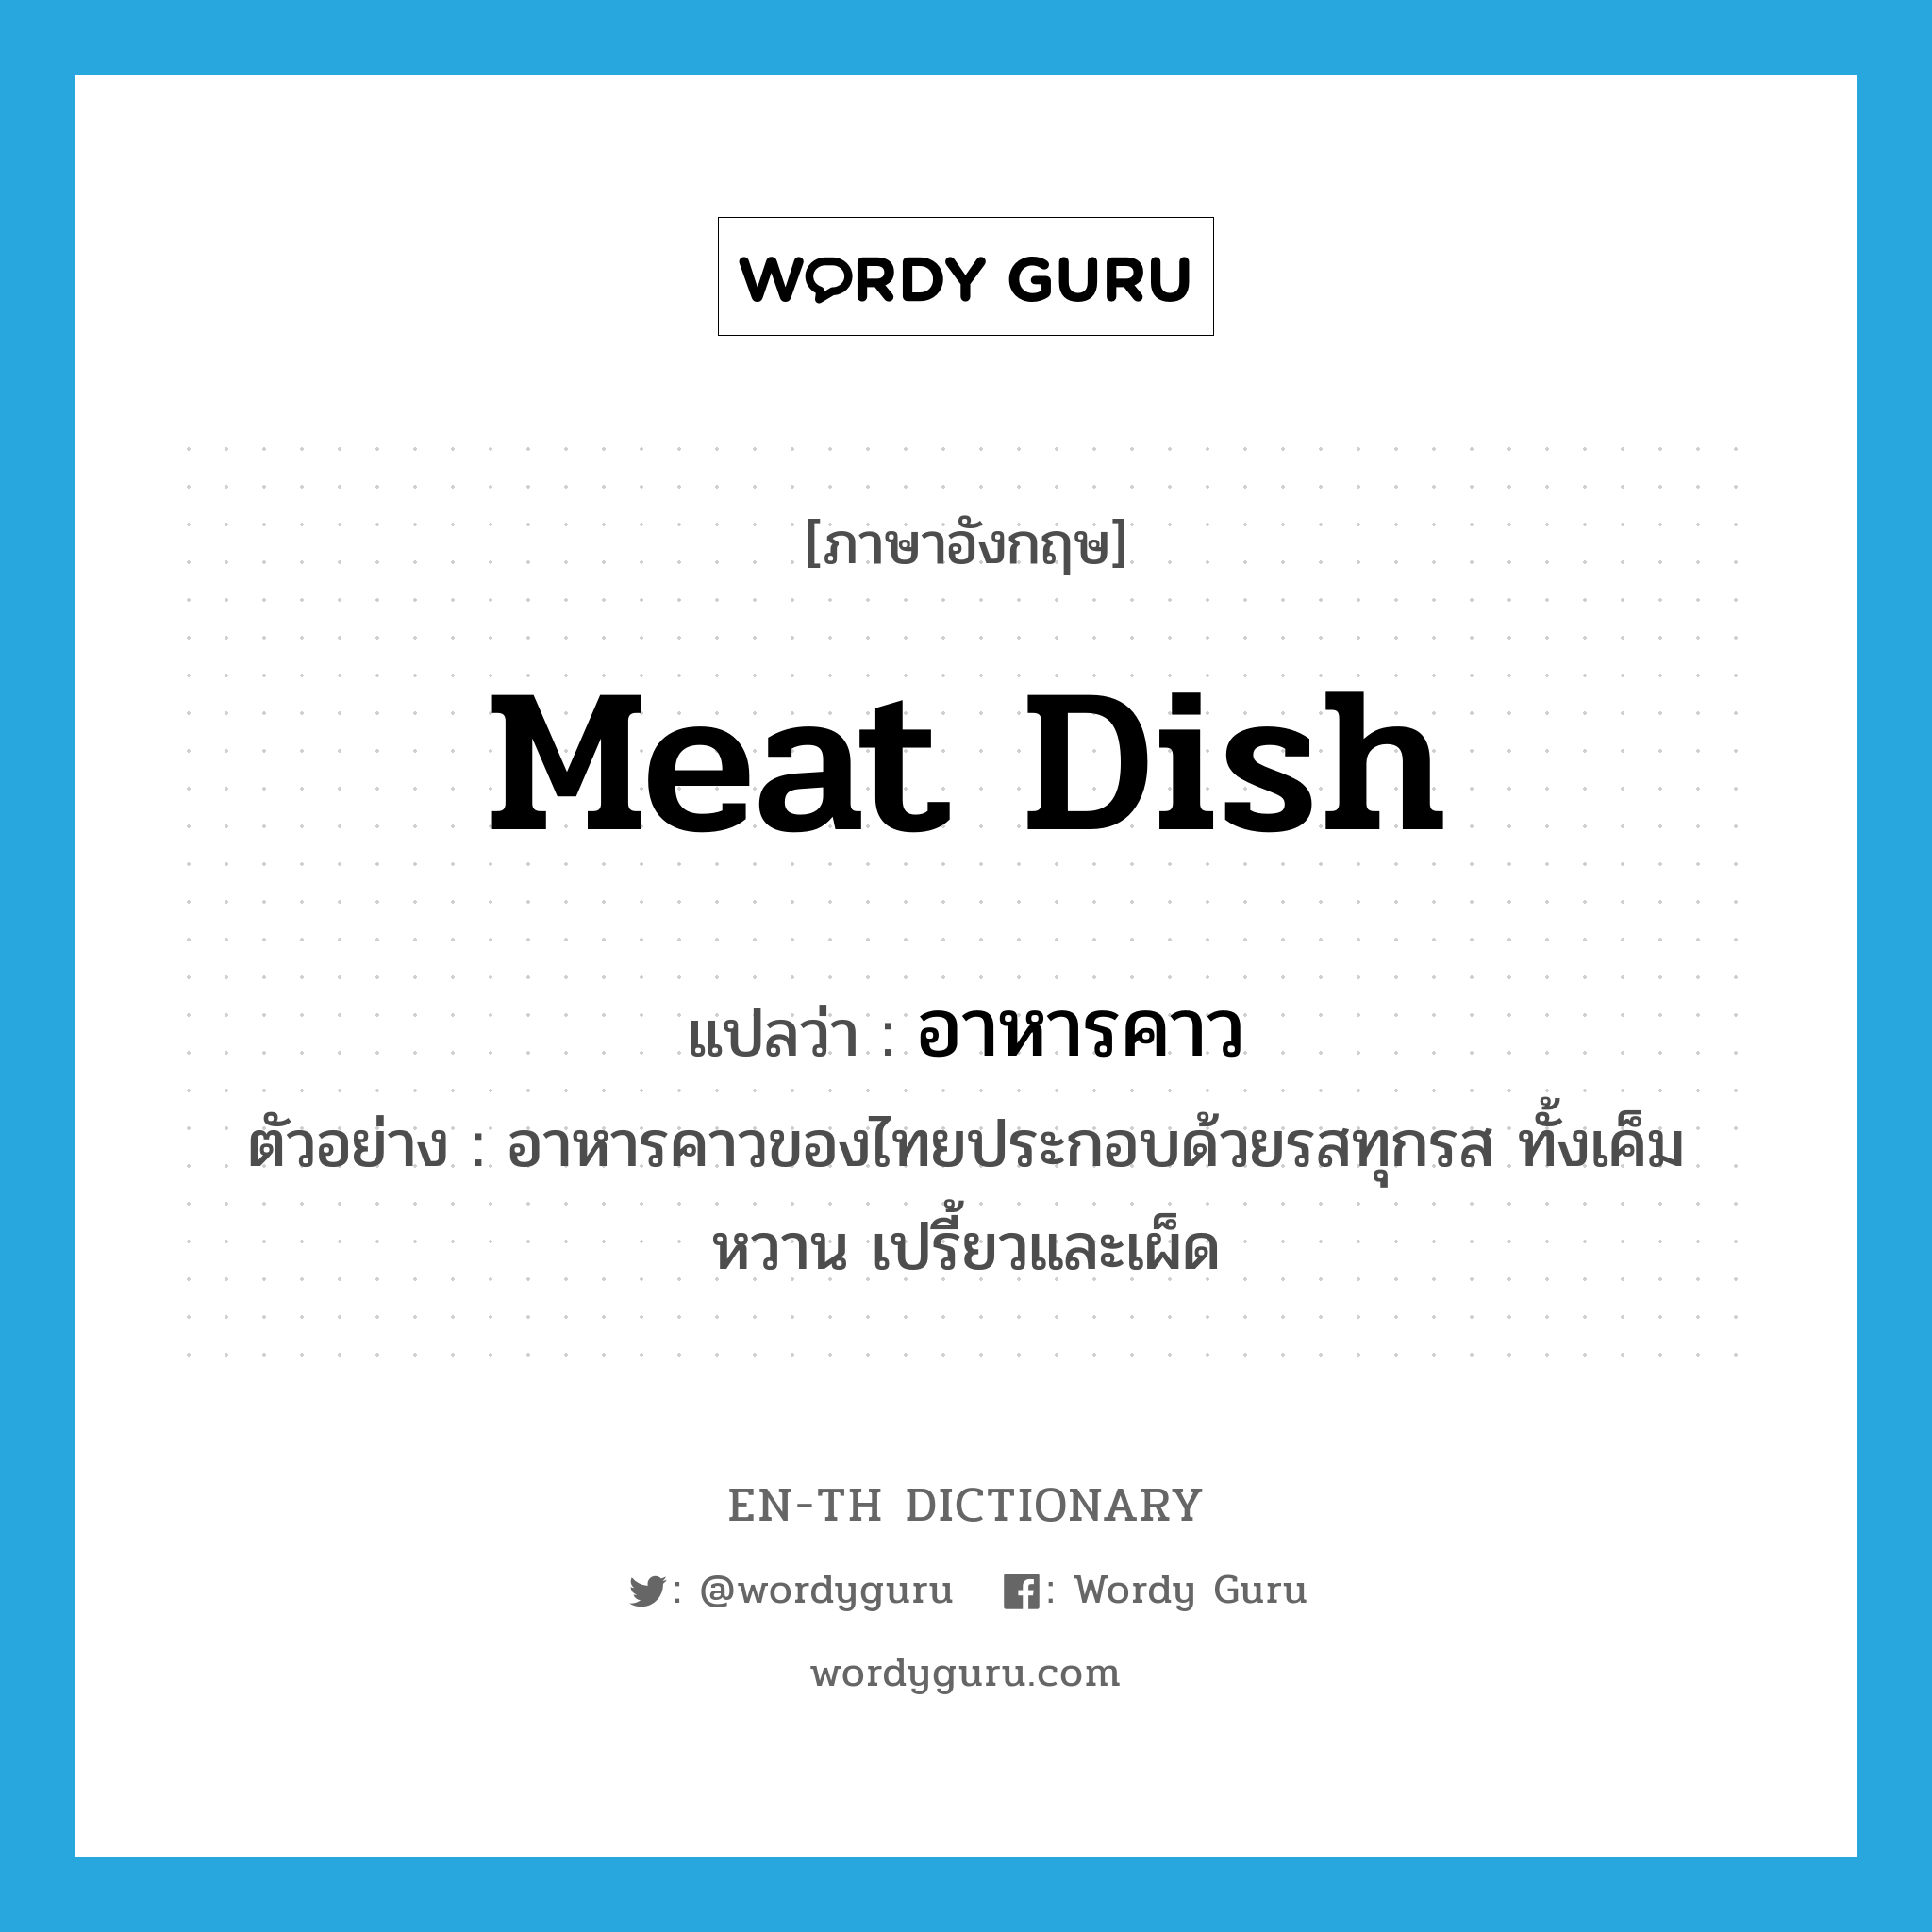 meat dish แปลว่า?, คำศัพท์ภาษาอังกฤษ meat dish แปลว่า อาหารคาว ประเภท N ตัวอย่าง อาหารคาวของไทยประกอบด้วยรสทุกรส ทั้งเค็ม หวาน เปรี้ยวและเผ็ด หมวด N